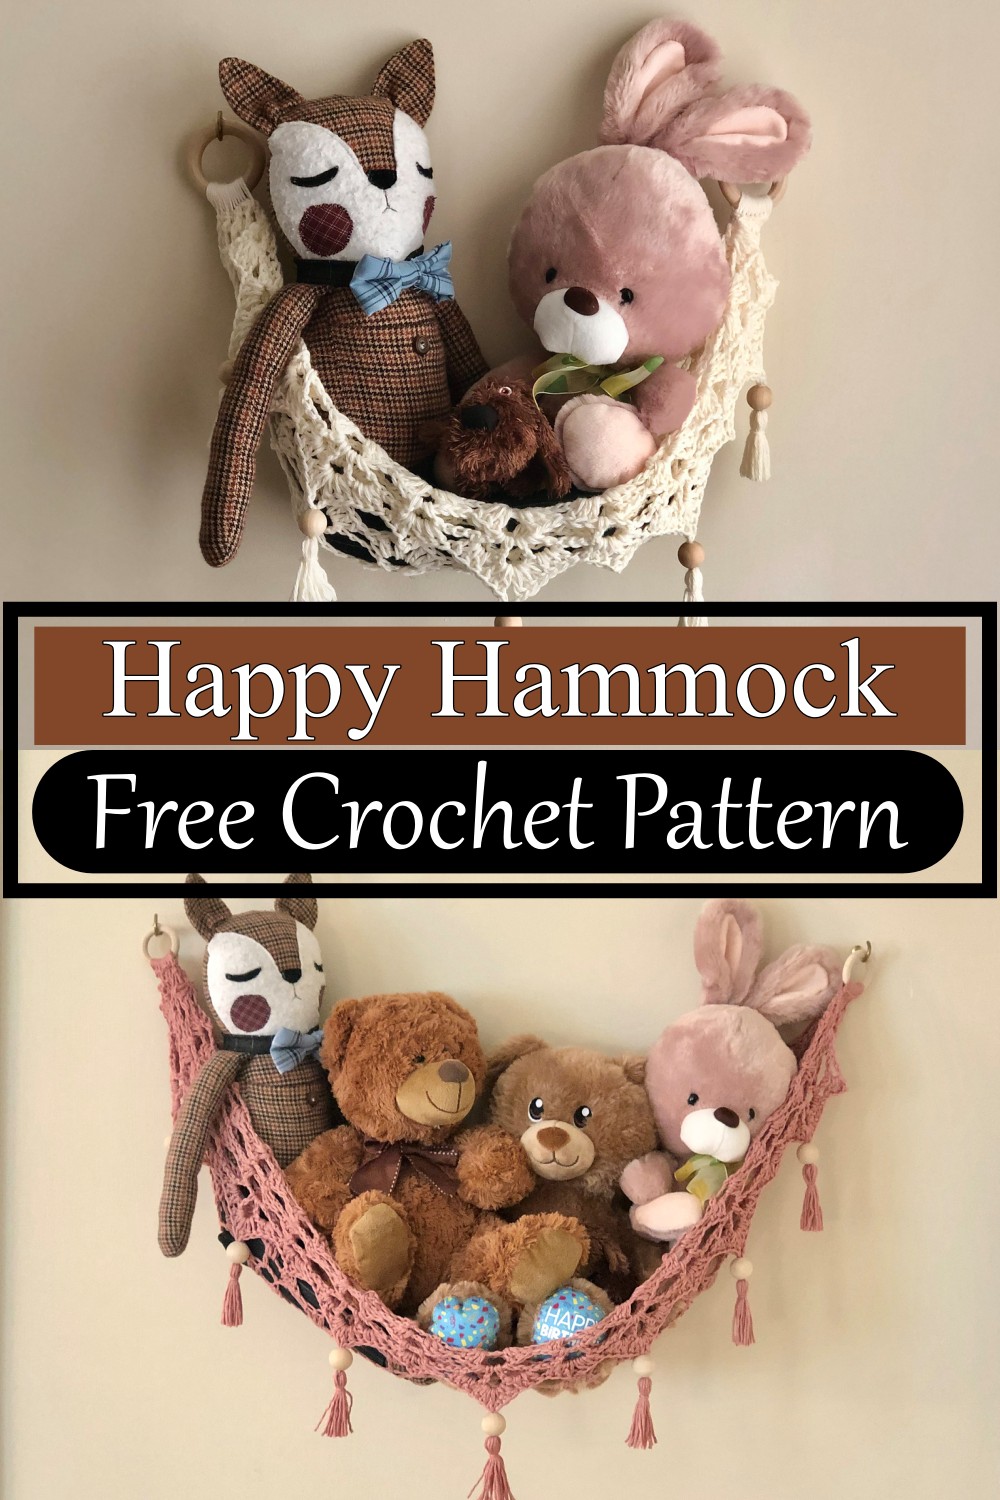 Happy Hammock